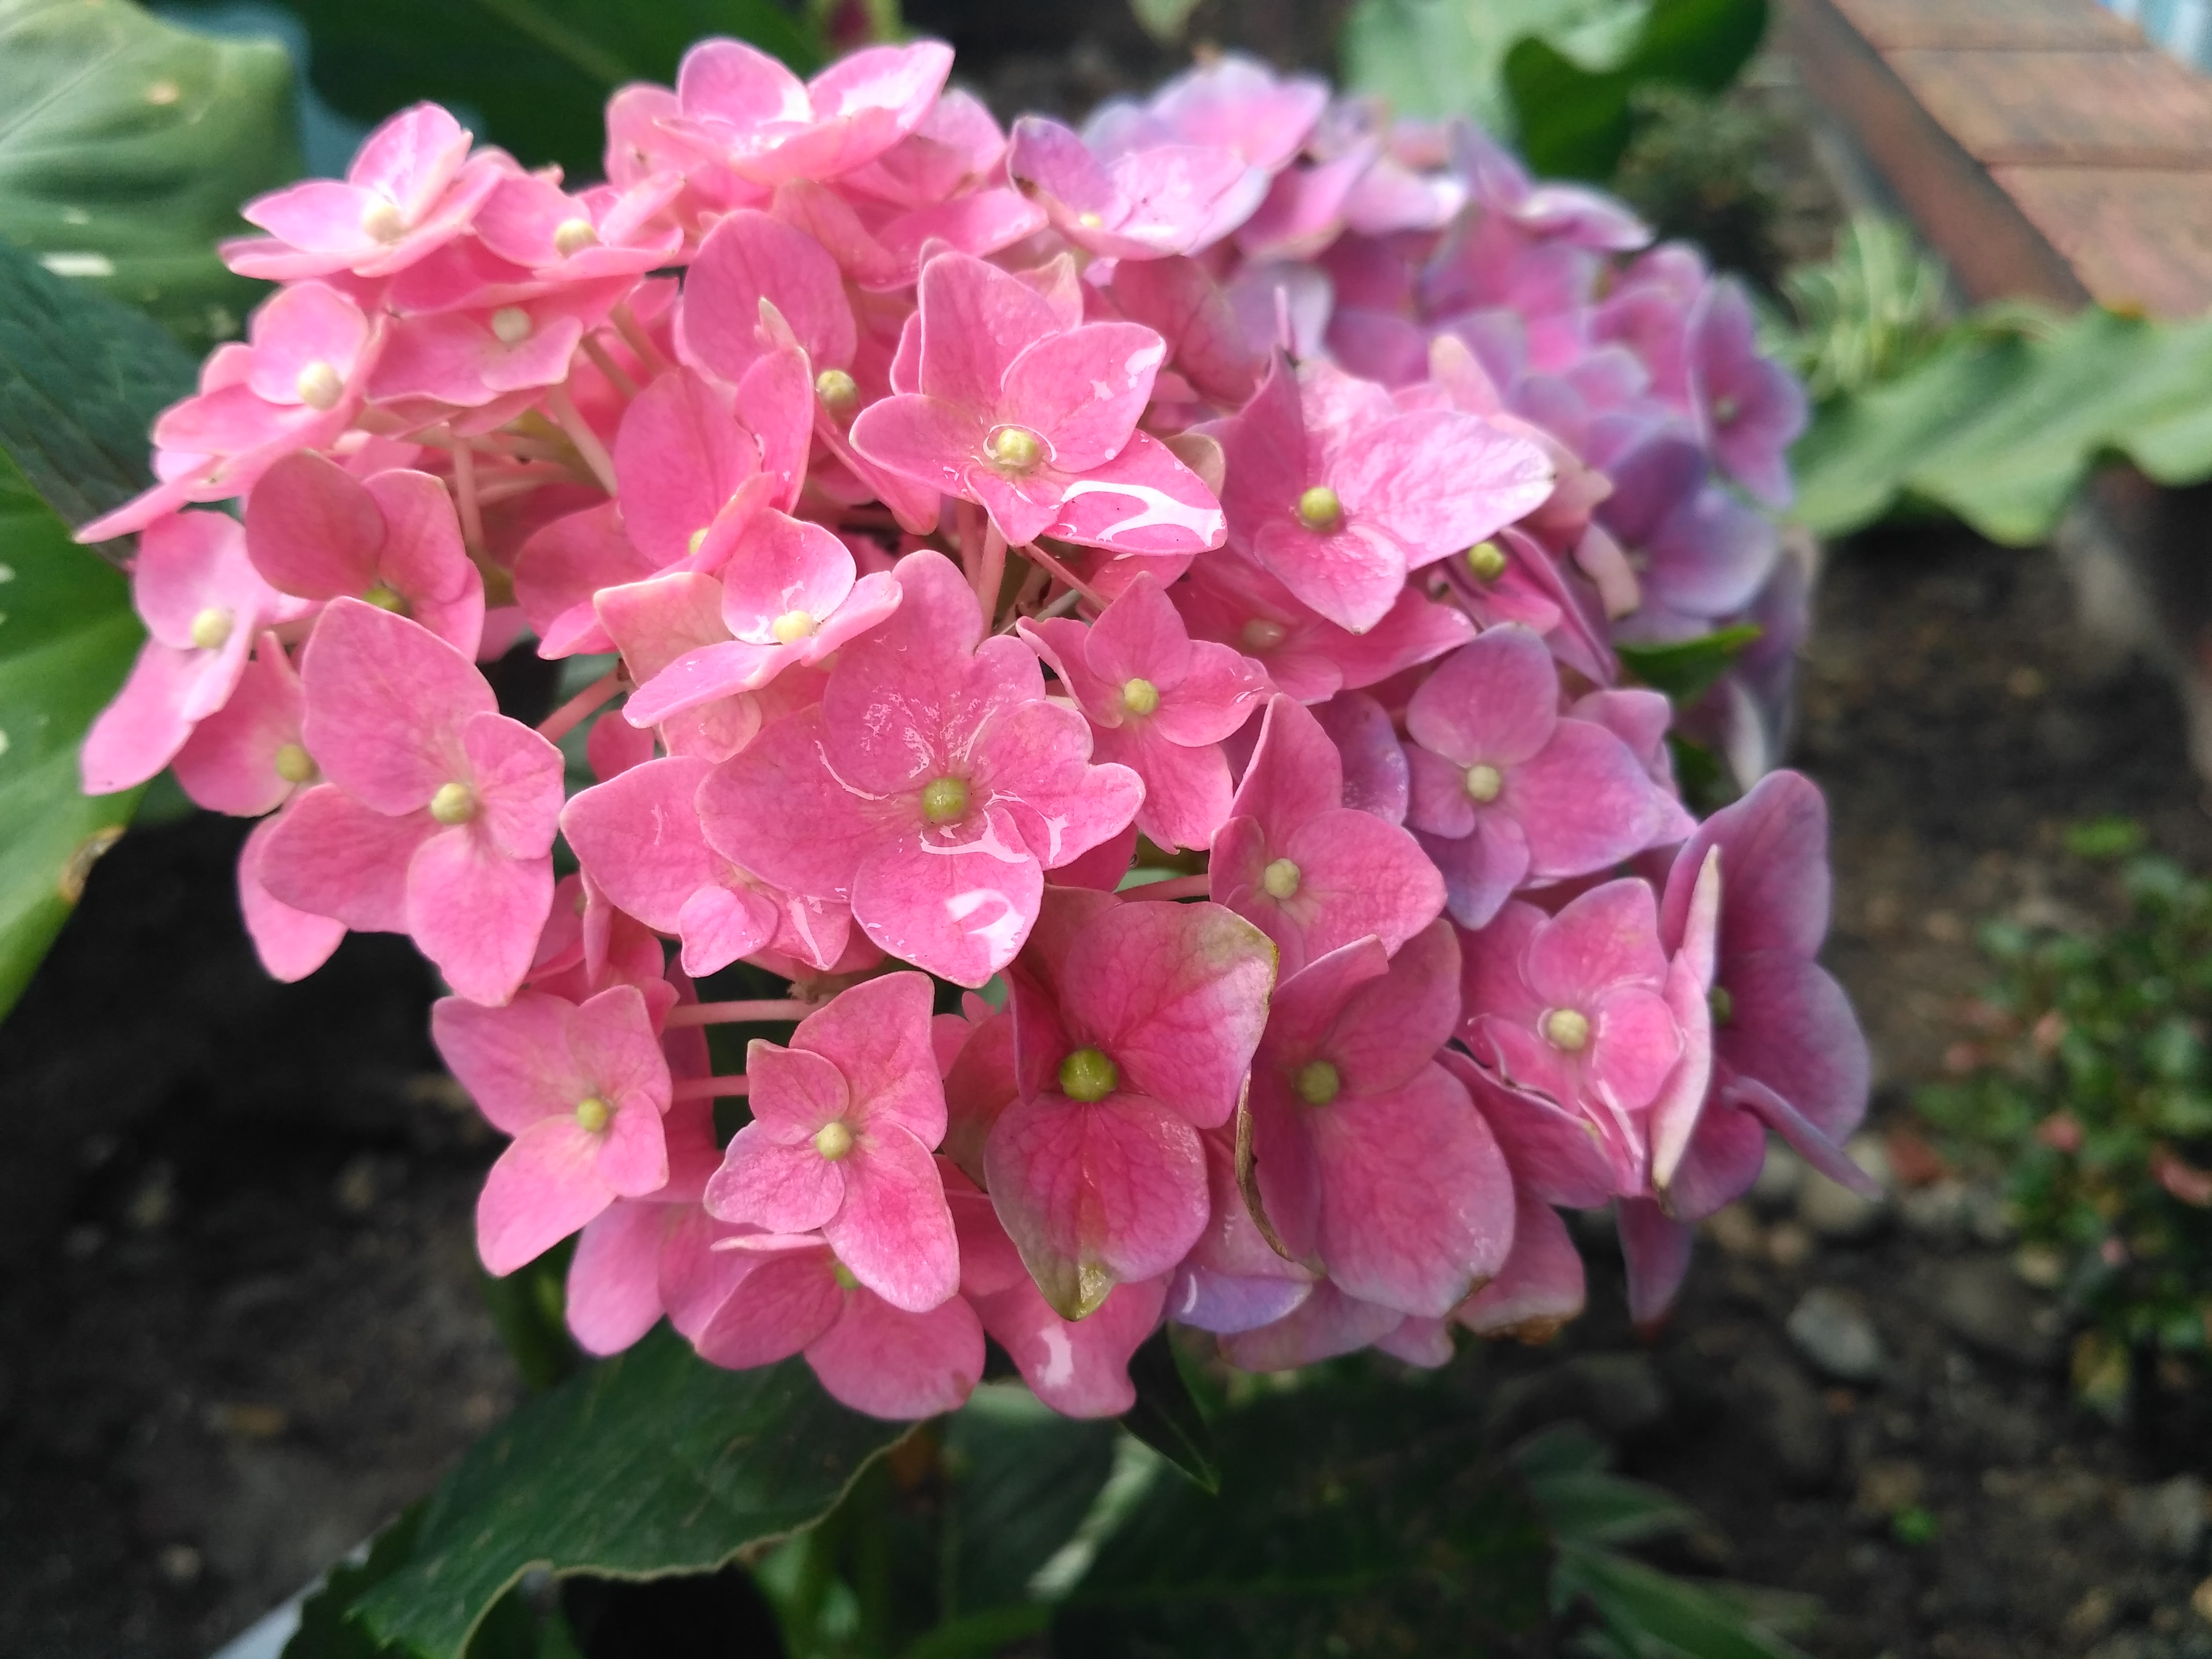 Mengintip Kecantikan Bunga Panca Warna Blog Munasyaroh Fadhilah